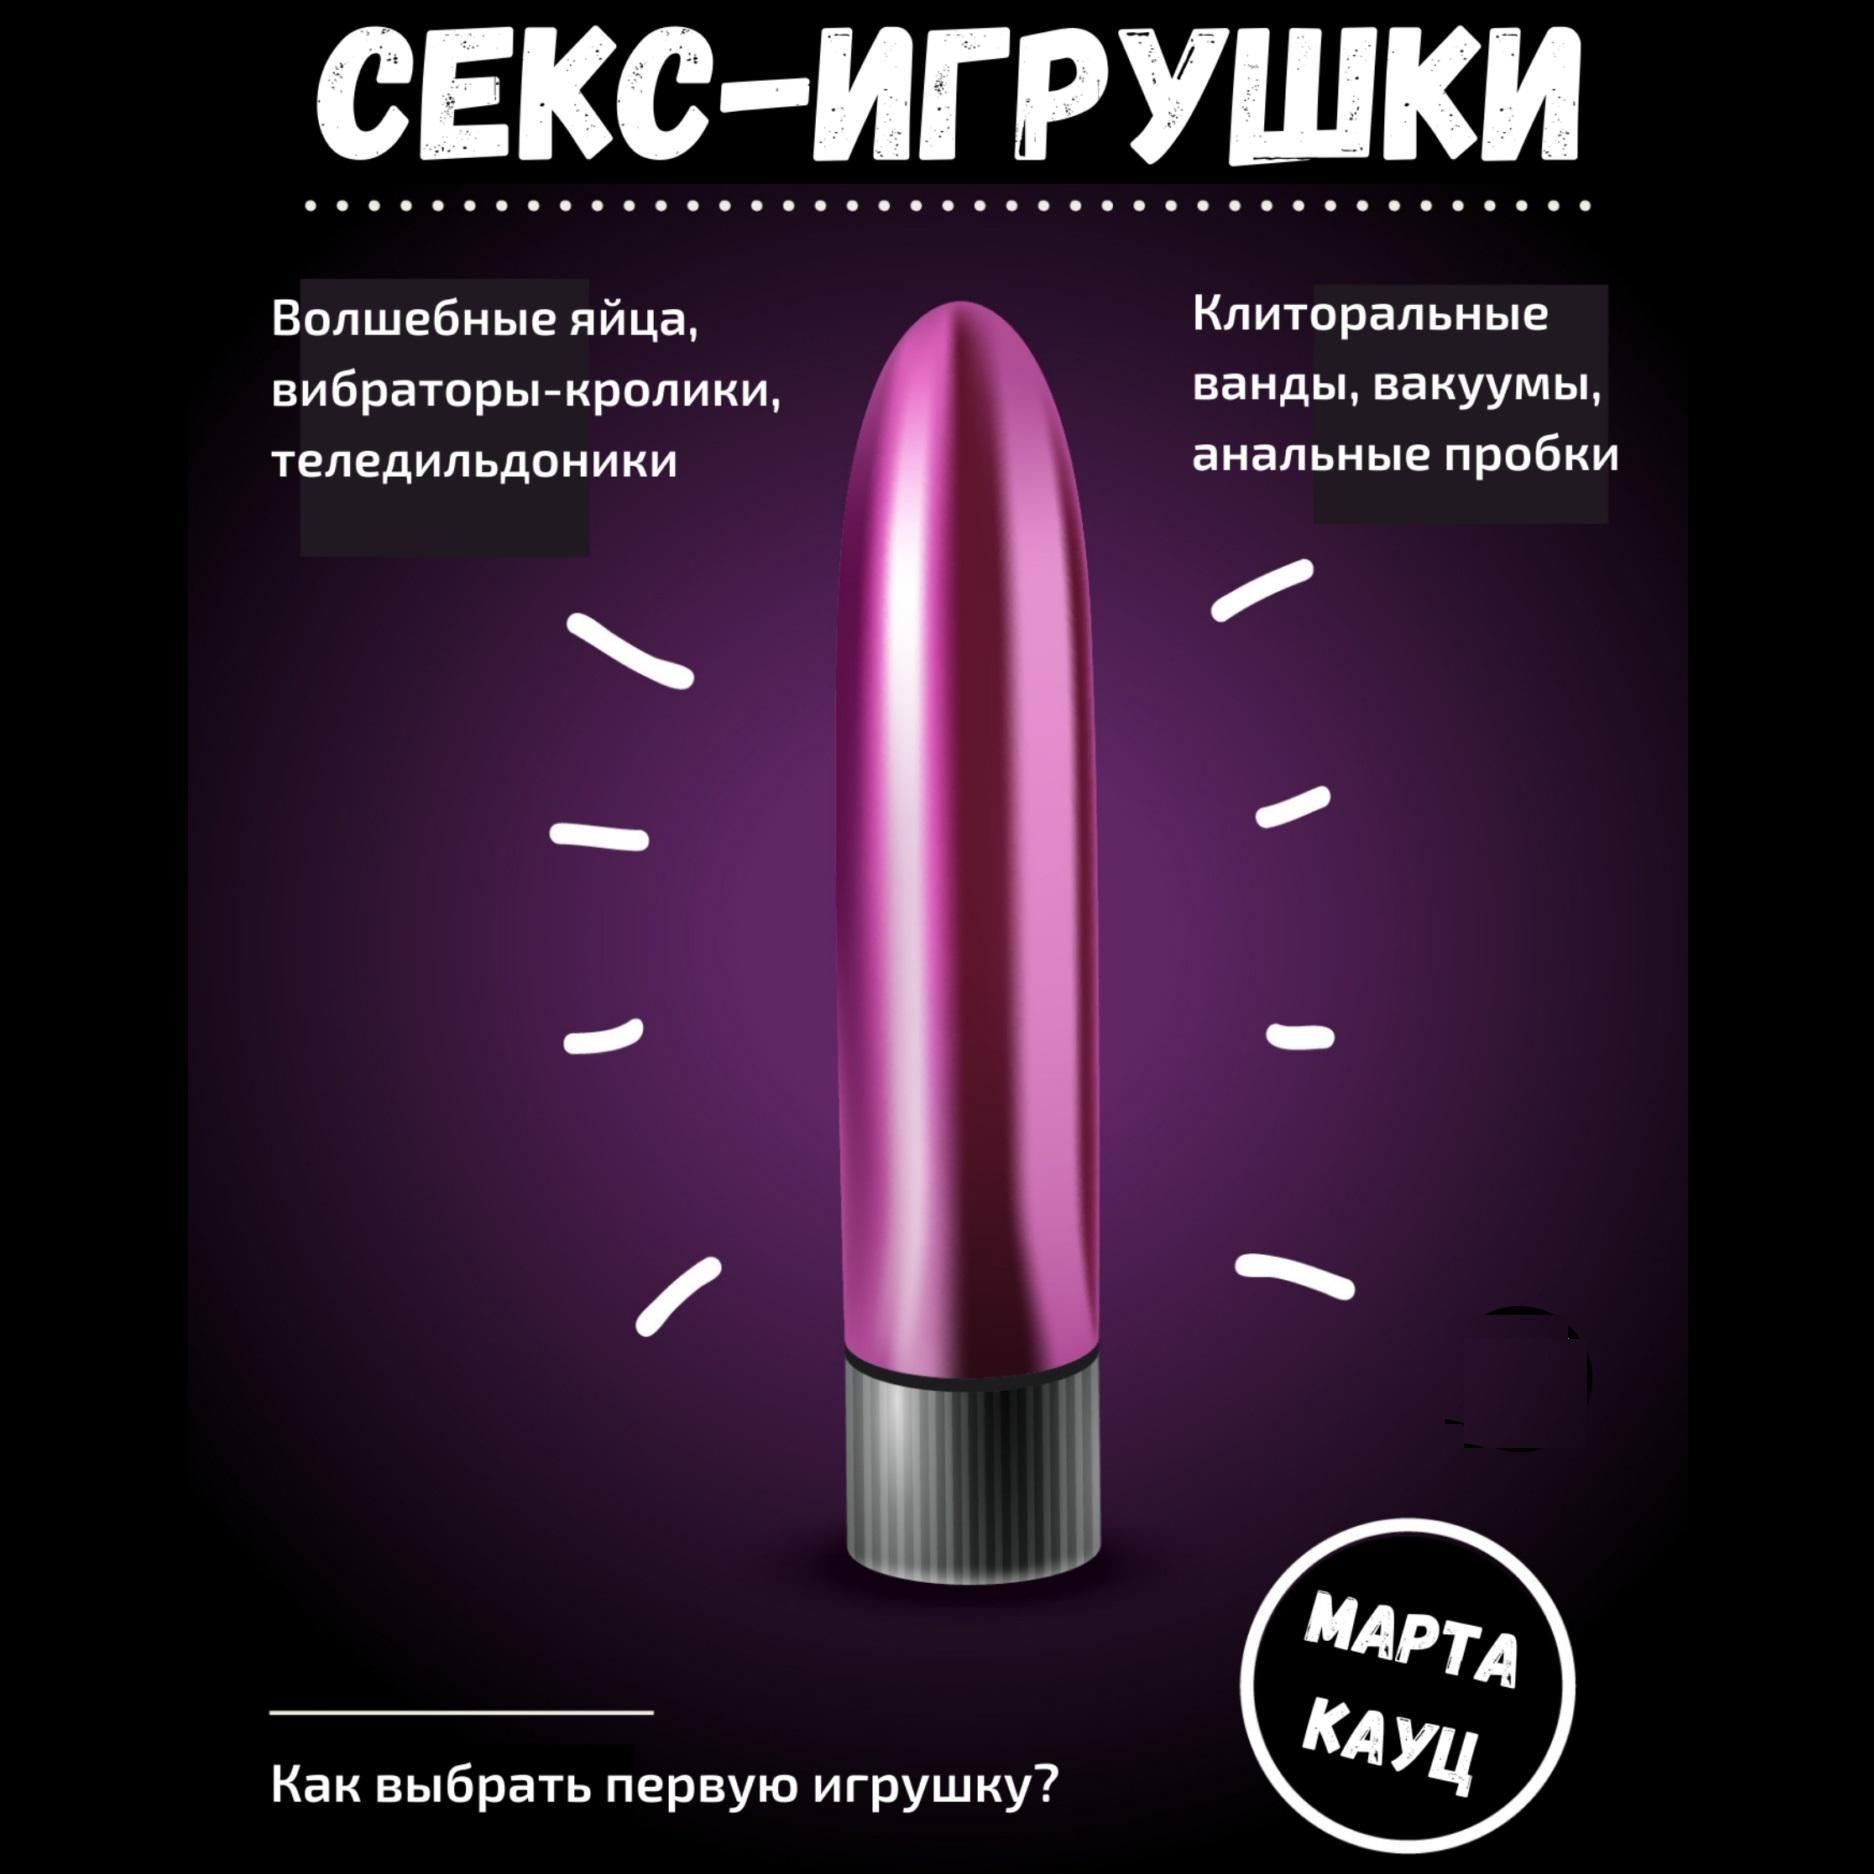 Секс на горячие играть онлайн | Игры ВКонтакте